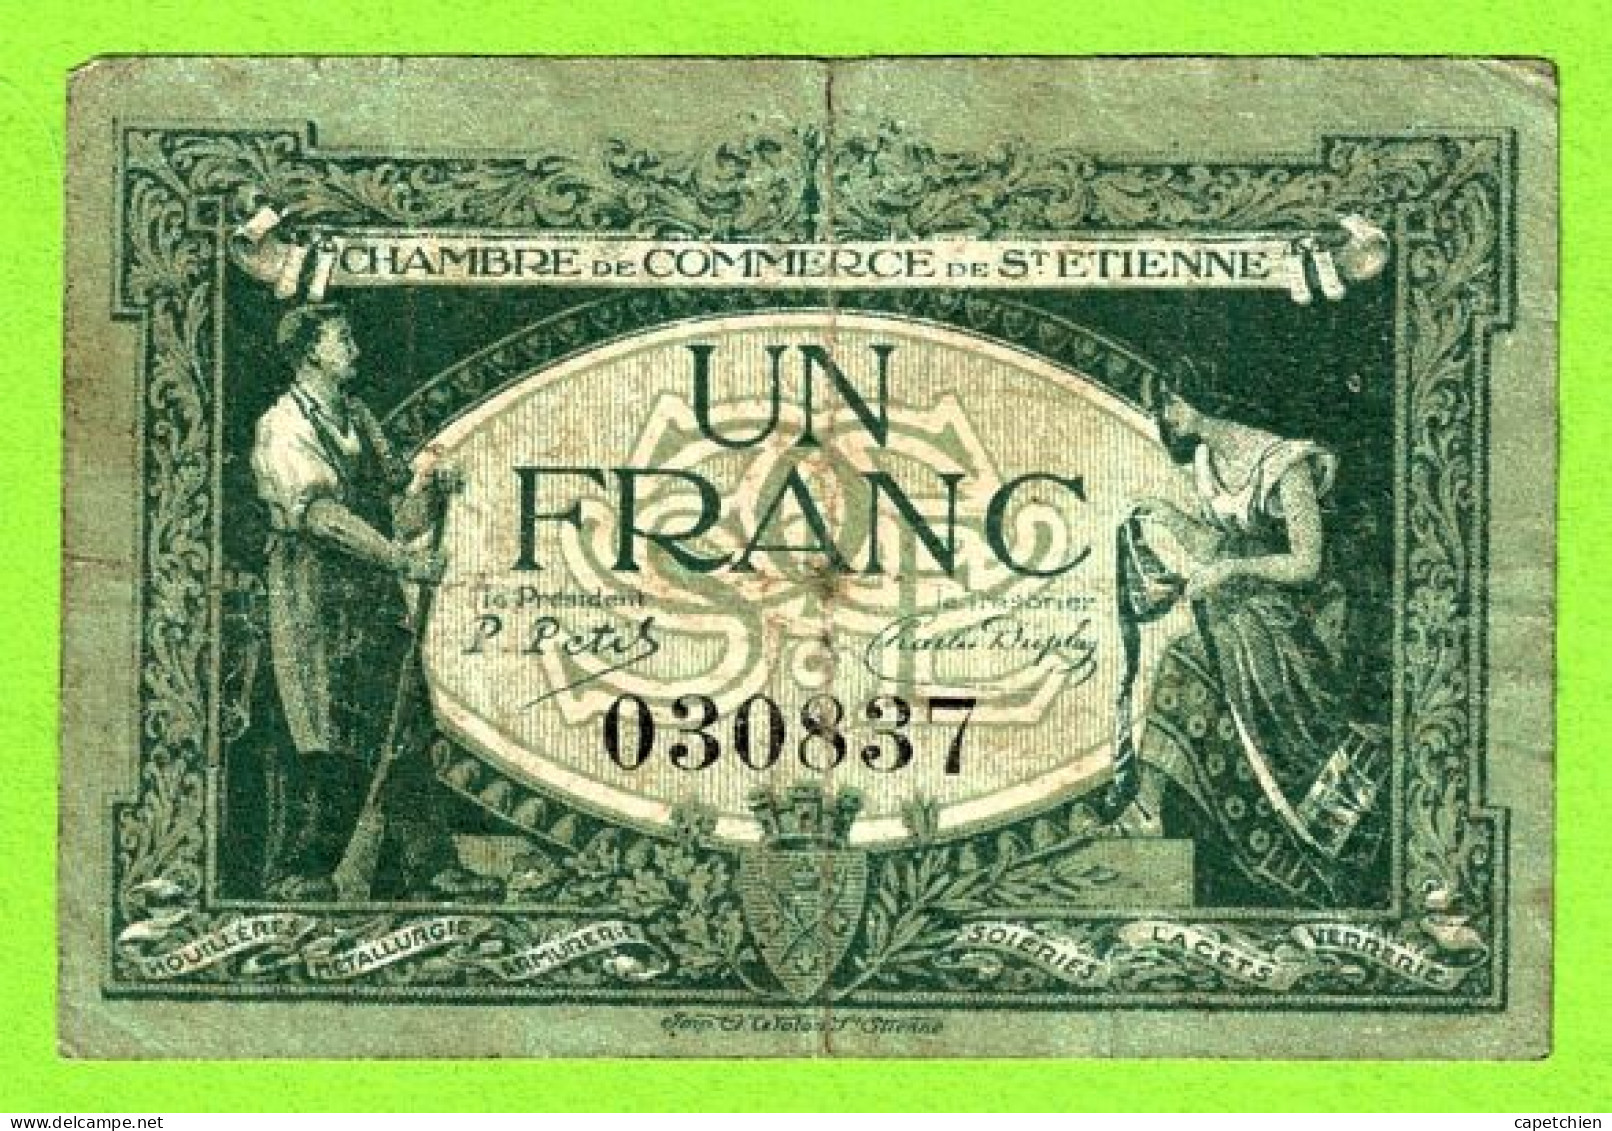 FRANCE / CHAMBRE De COMMERCE De SAINT ETIENNE / 1 FRANC / 12 JANVIER 1921 / N°030837 SERIE - Chamber Of Commerce